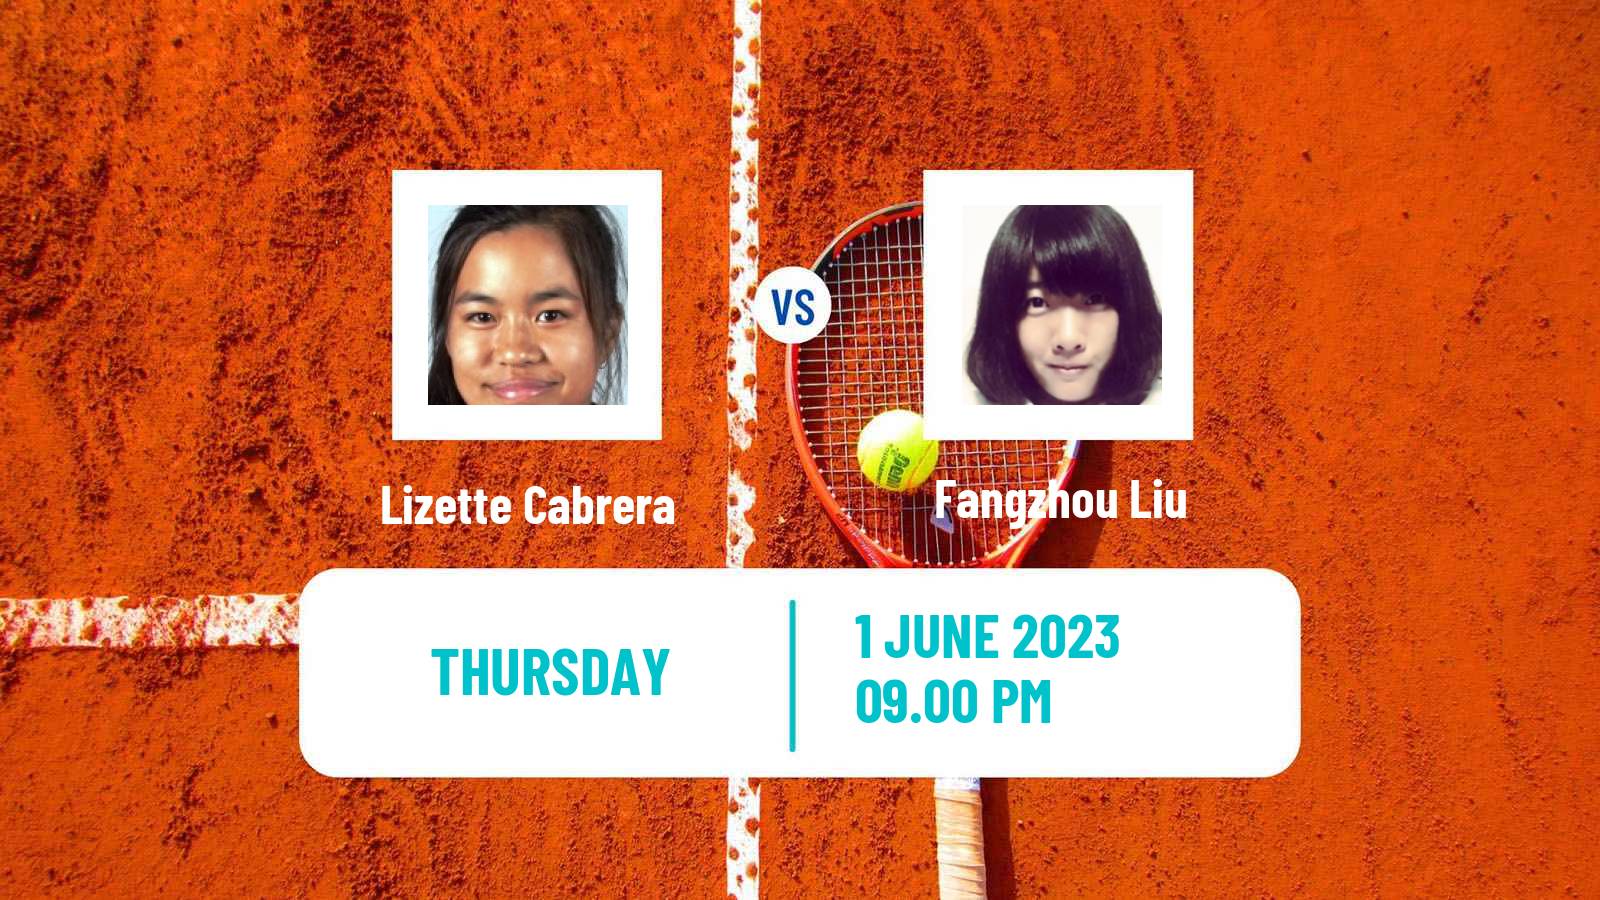 Tennis ITF W25 Changwon Women Lizette Cabrera - Fangzhou Liu